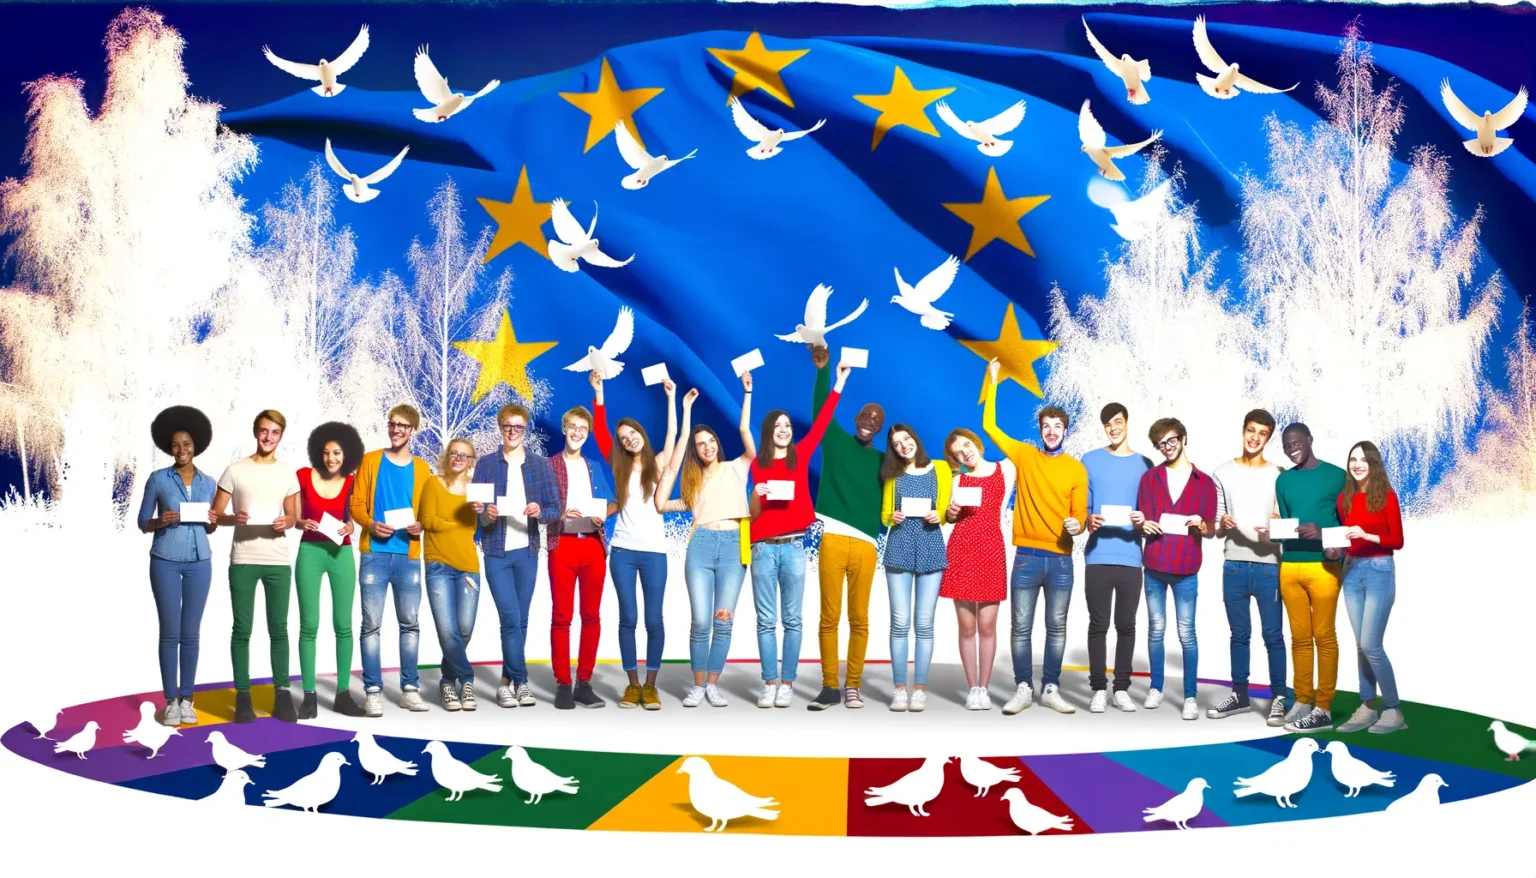 Eine vielfältige Gruppe lächelnder junger Menschen, die Laptops halten oder ihre Arme heben, vor einem stilisierten Hintergrund mit der blauen EU-Flagge, Sternen und weißen Friedenstauben. Am unteren Bildrand ist ein farbiges Band mit friedvollen Tier- und Vogelsilhouetten sichtbar.